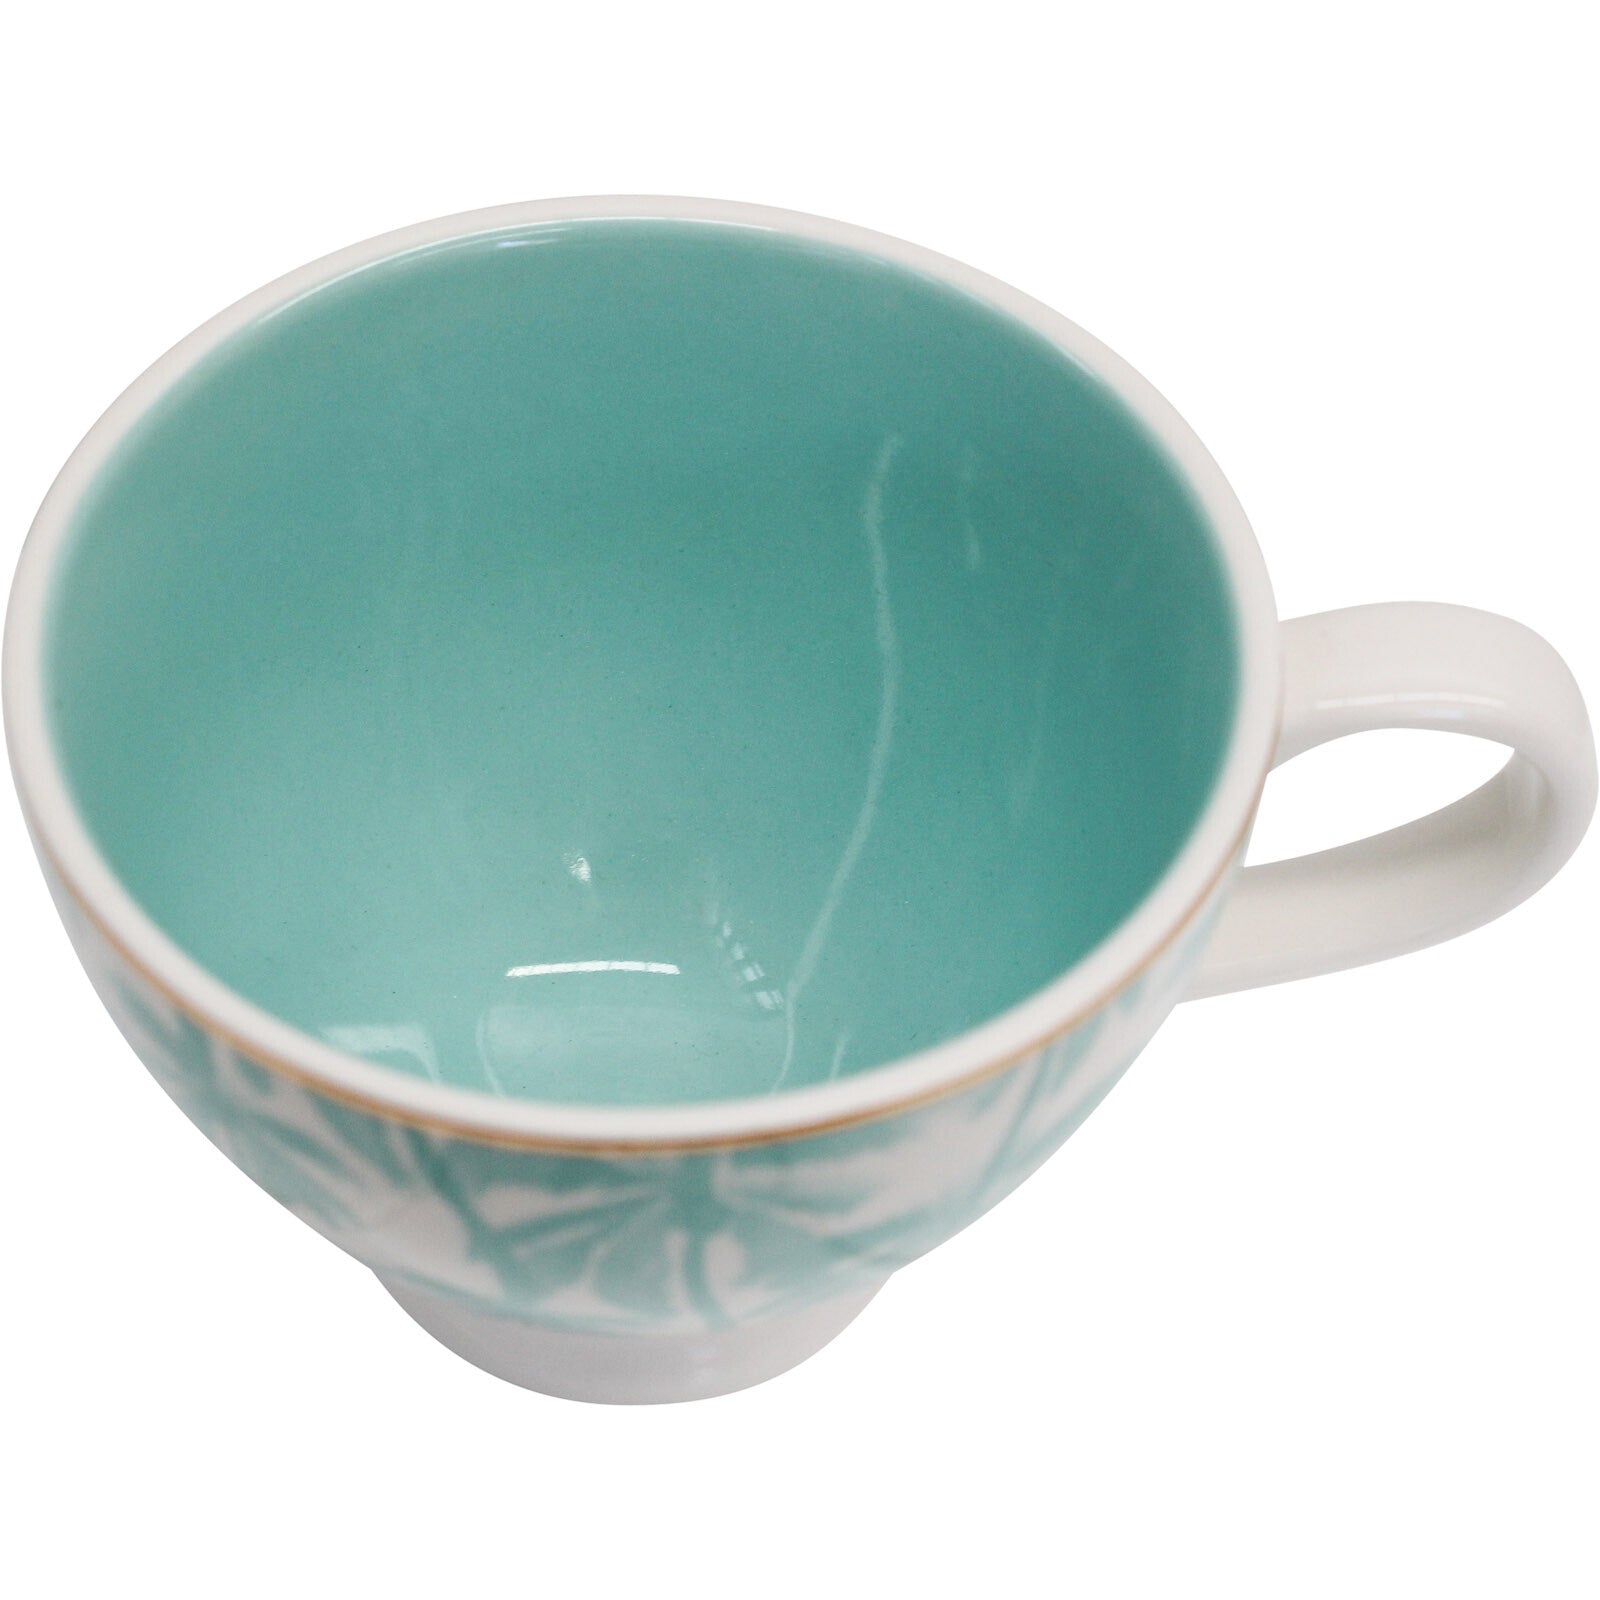 La Vida Tea Cups For A Hampton Home